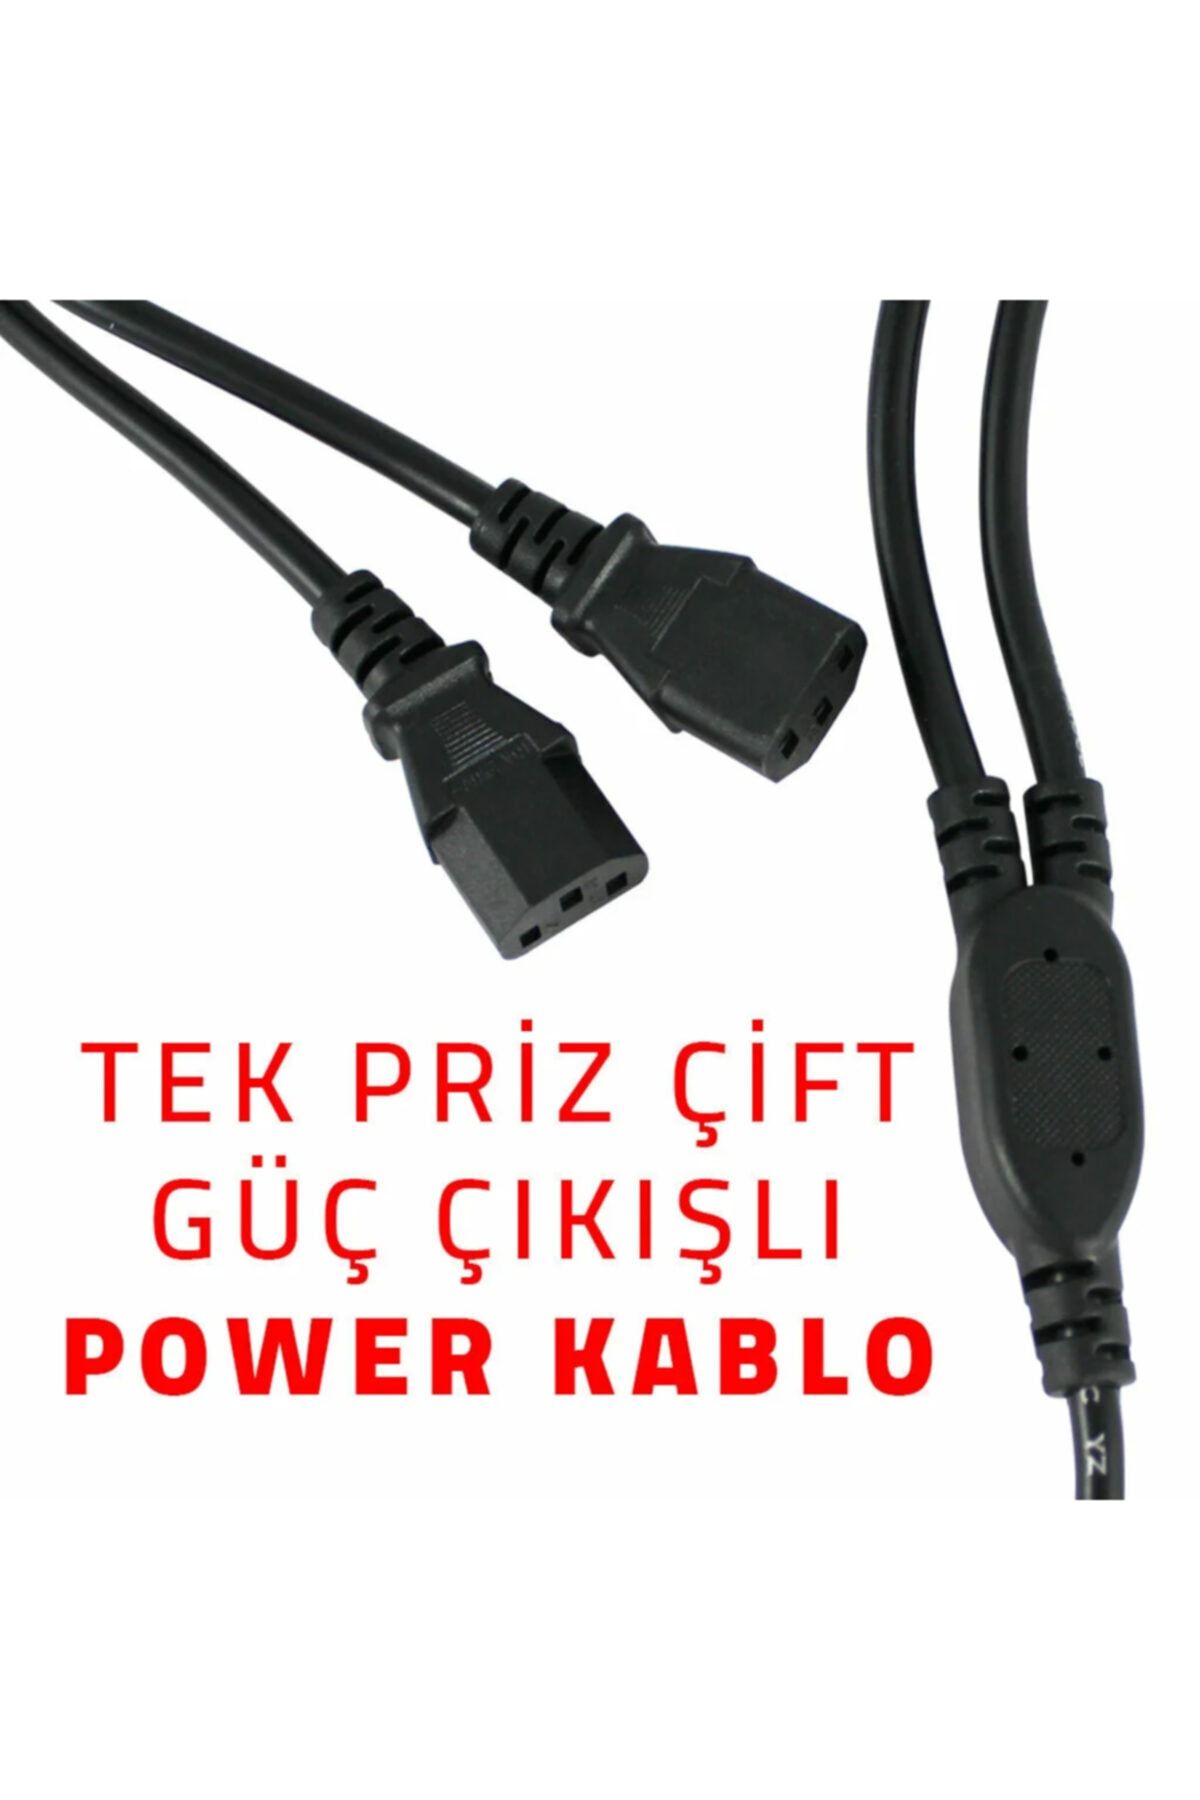 TRILOGIC Power Kablo - Tek Priz Çift Güç Çıkışlı